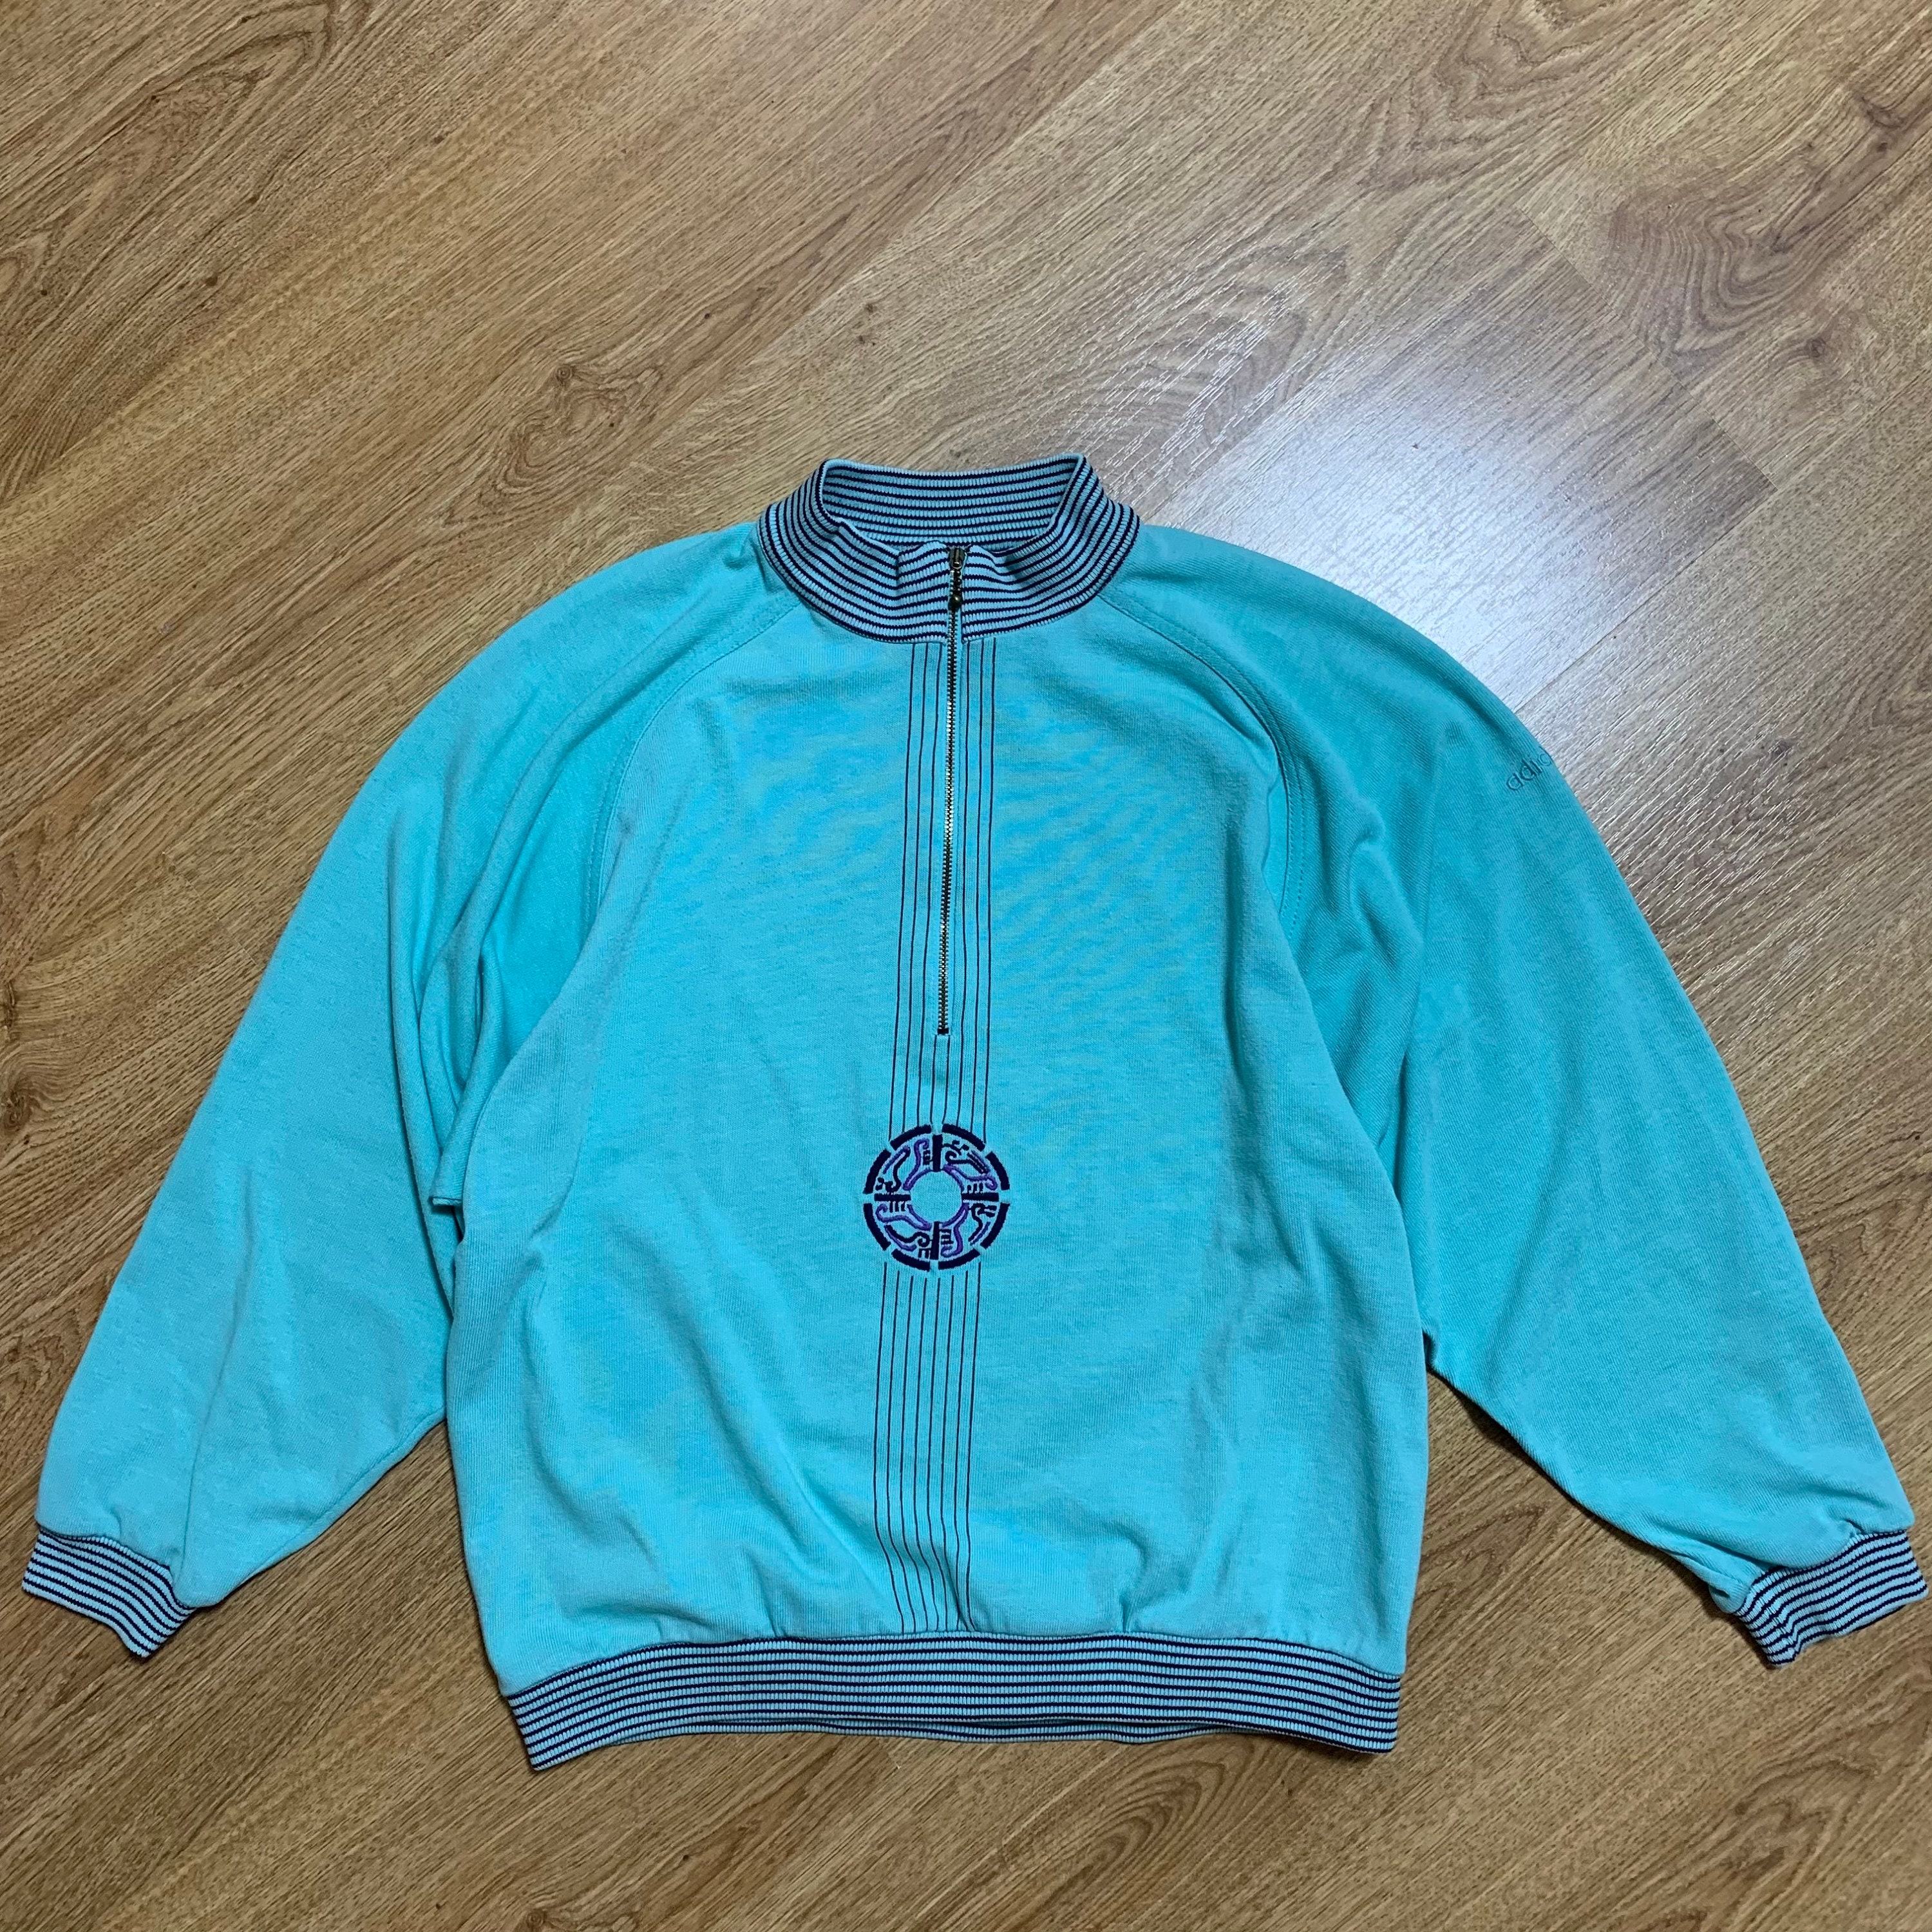 Veste Adidas à capuche Ventex Trefoil Bleu ciel 70'S Vintage Jacket - 180 /  L 